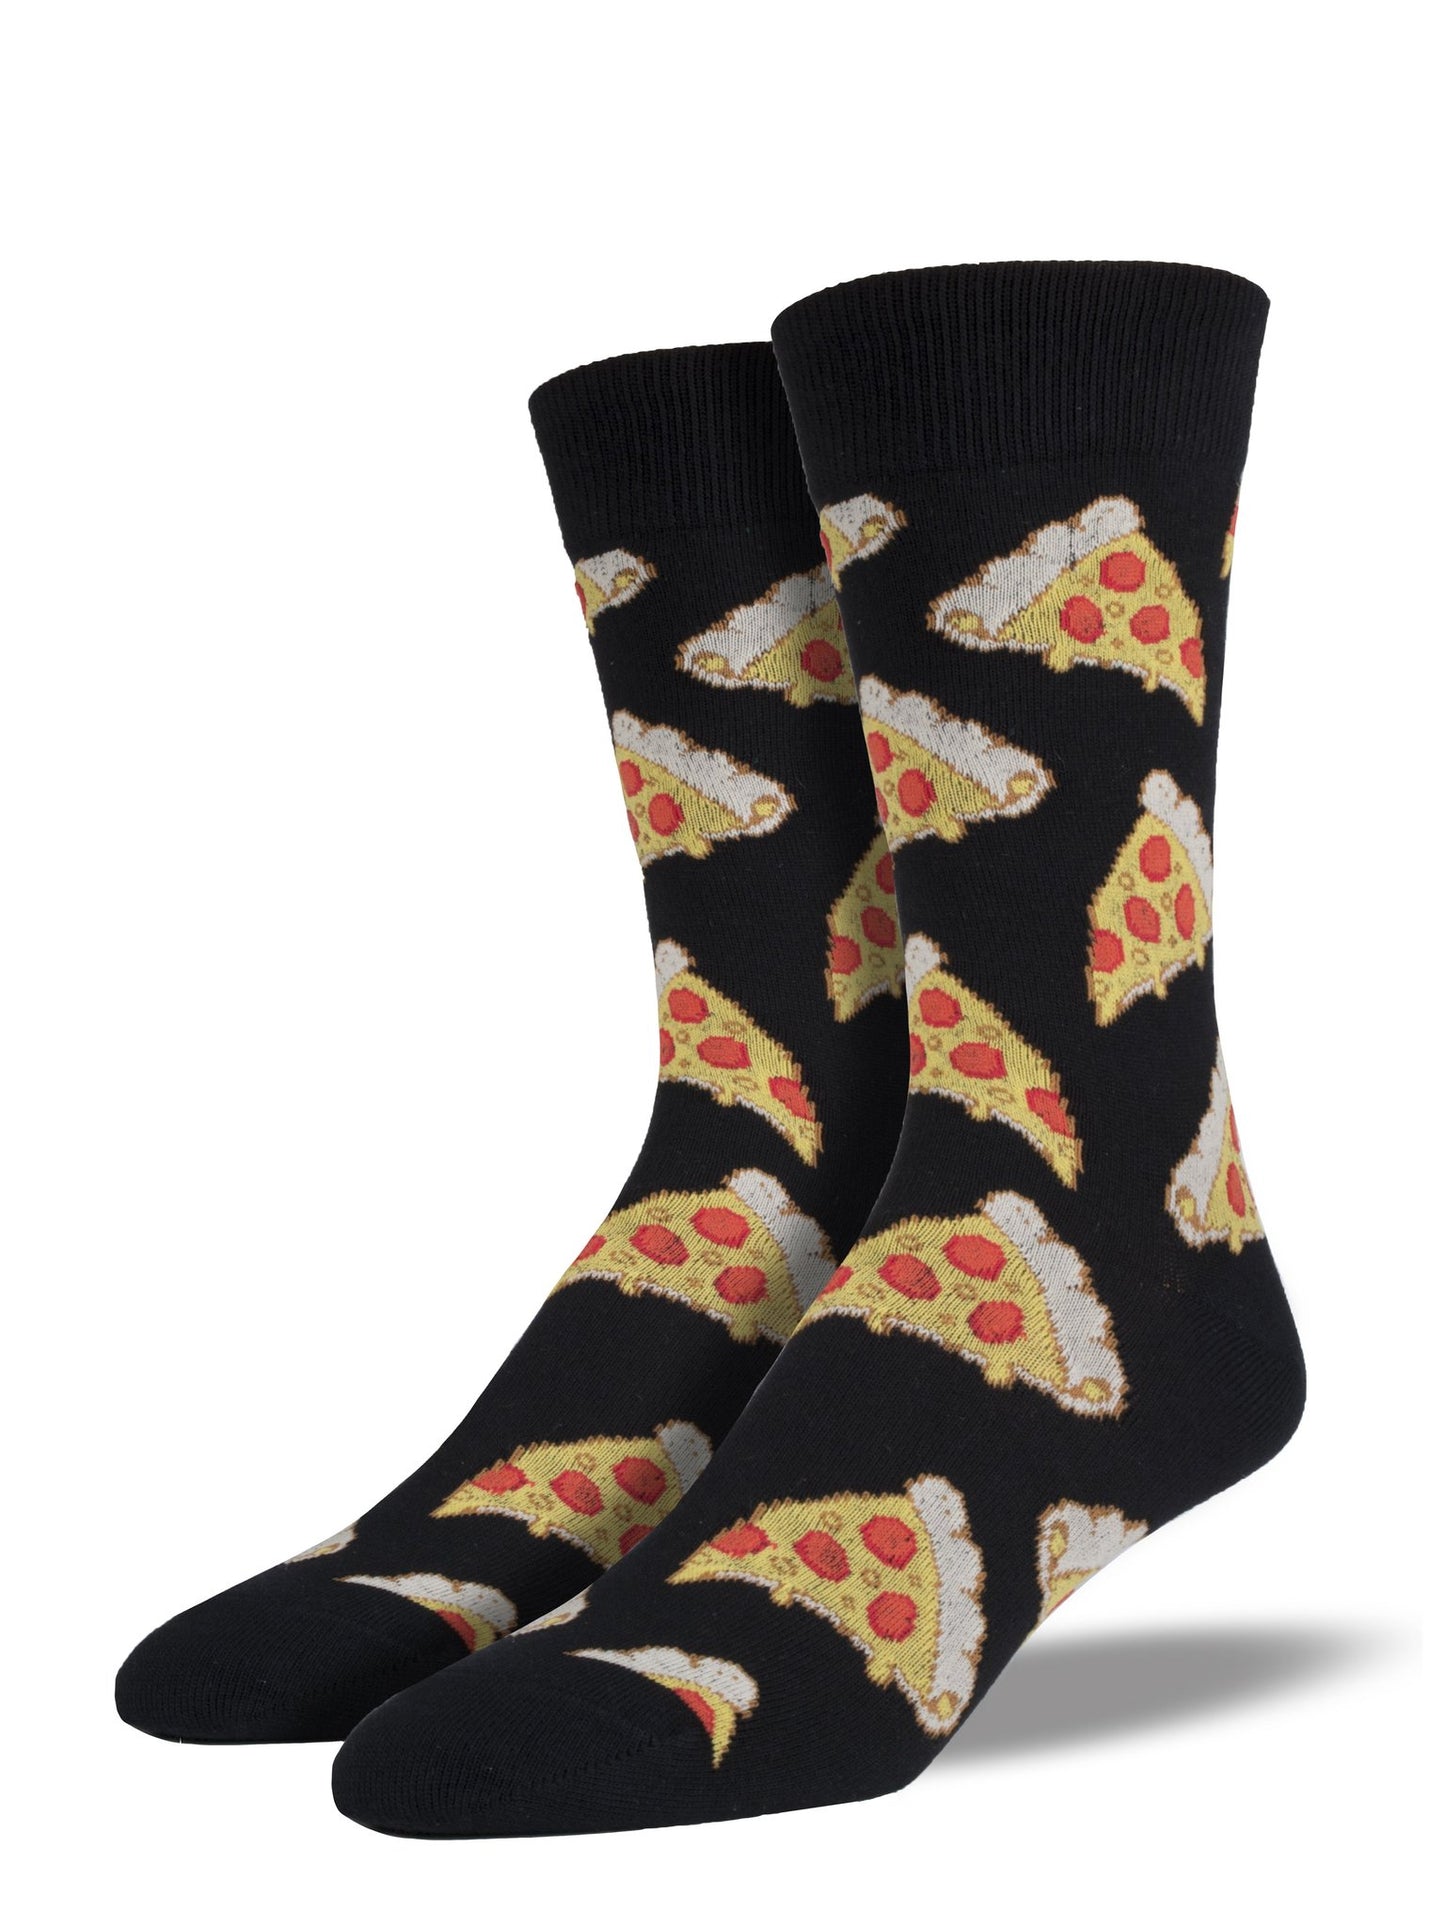 Pizza Men's Crew Socks Black